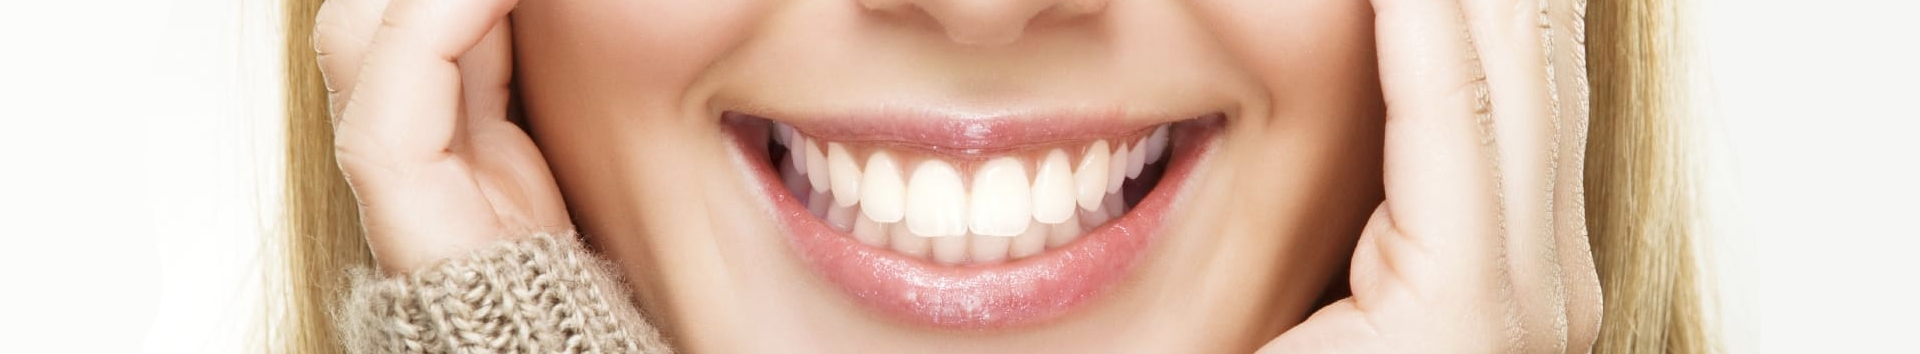 Dentes perfeitos: Faça essas 3 coisas e tenha resultado rápido